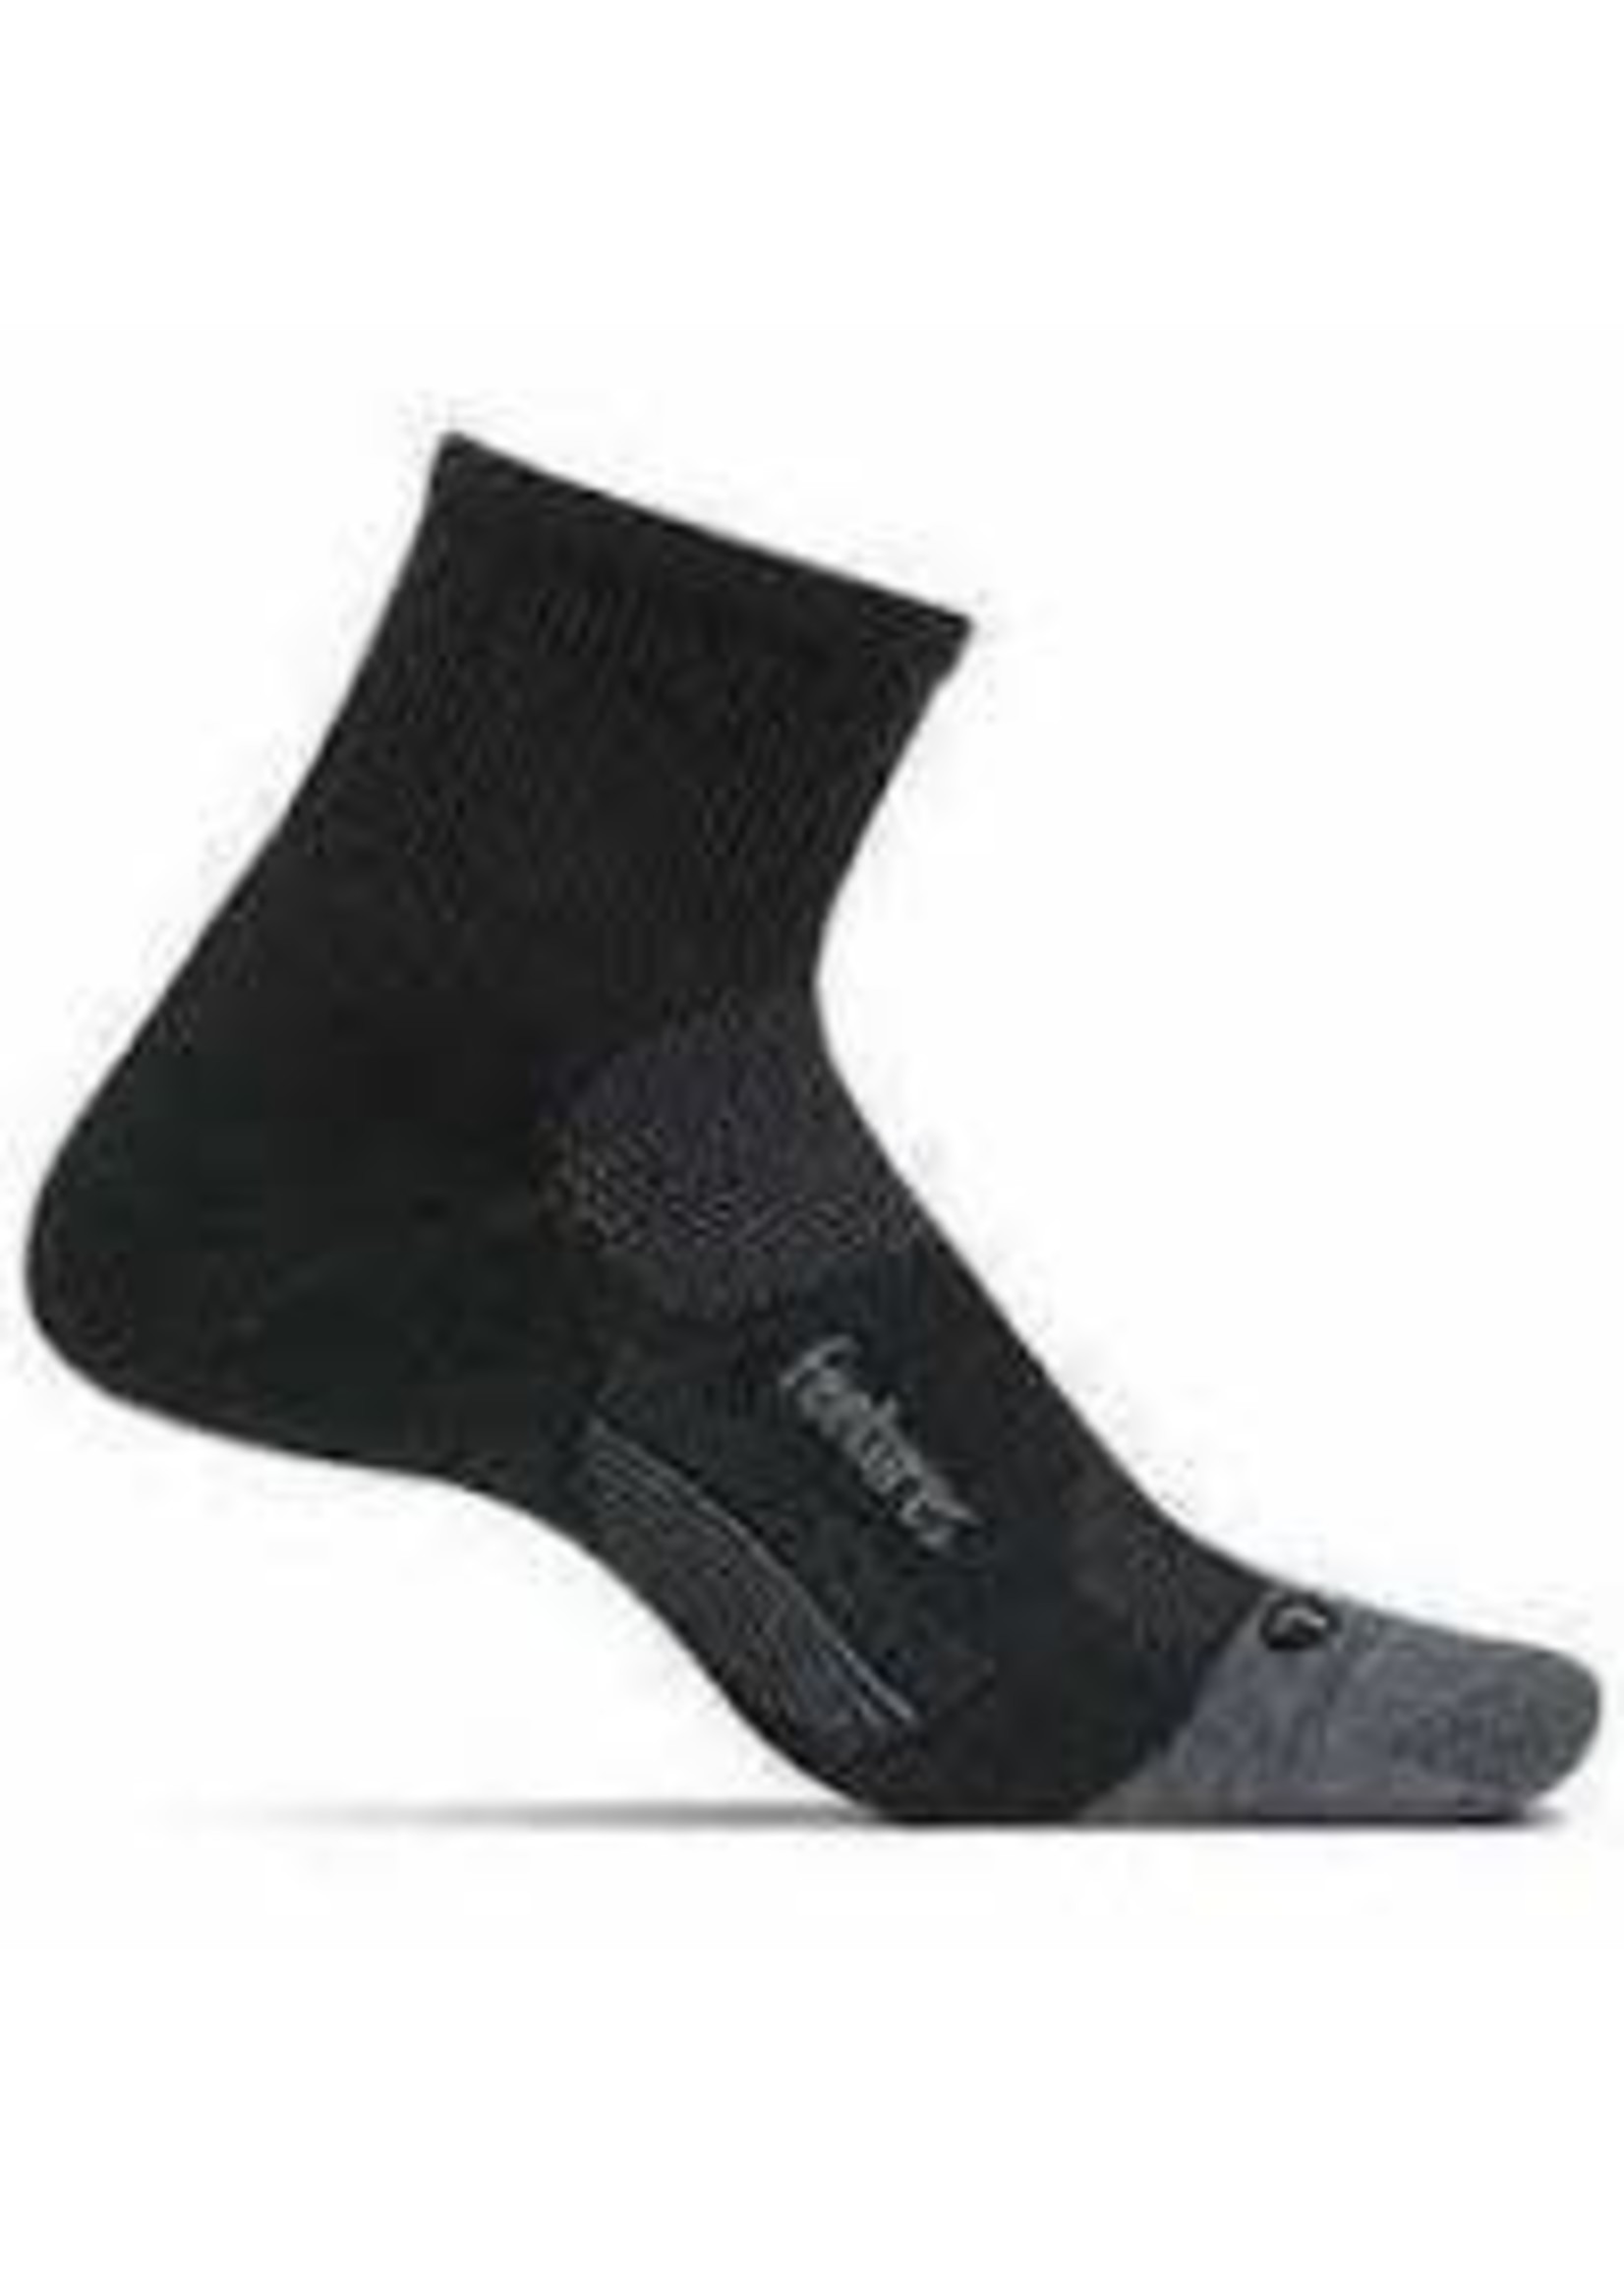 Feetures Socks Feetures Merino 10 Ult Lt Quarter